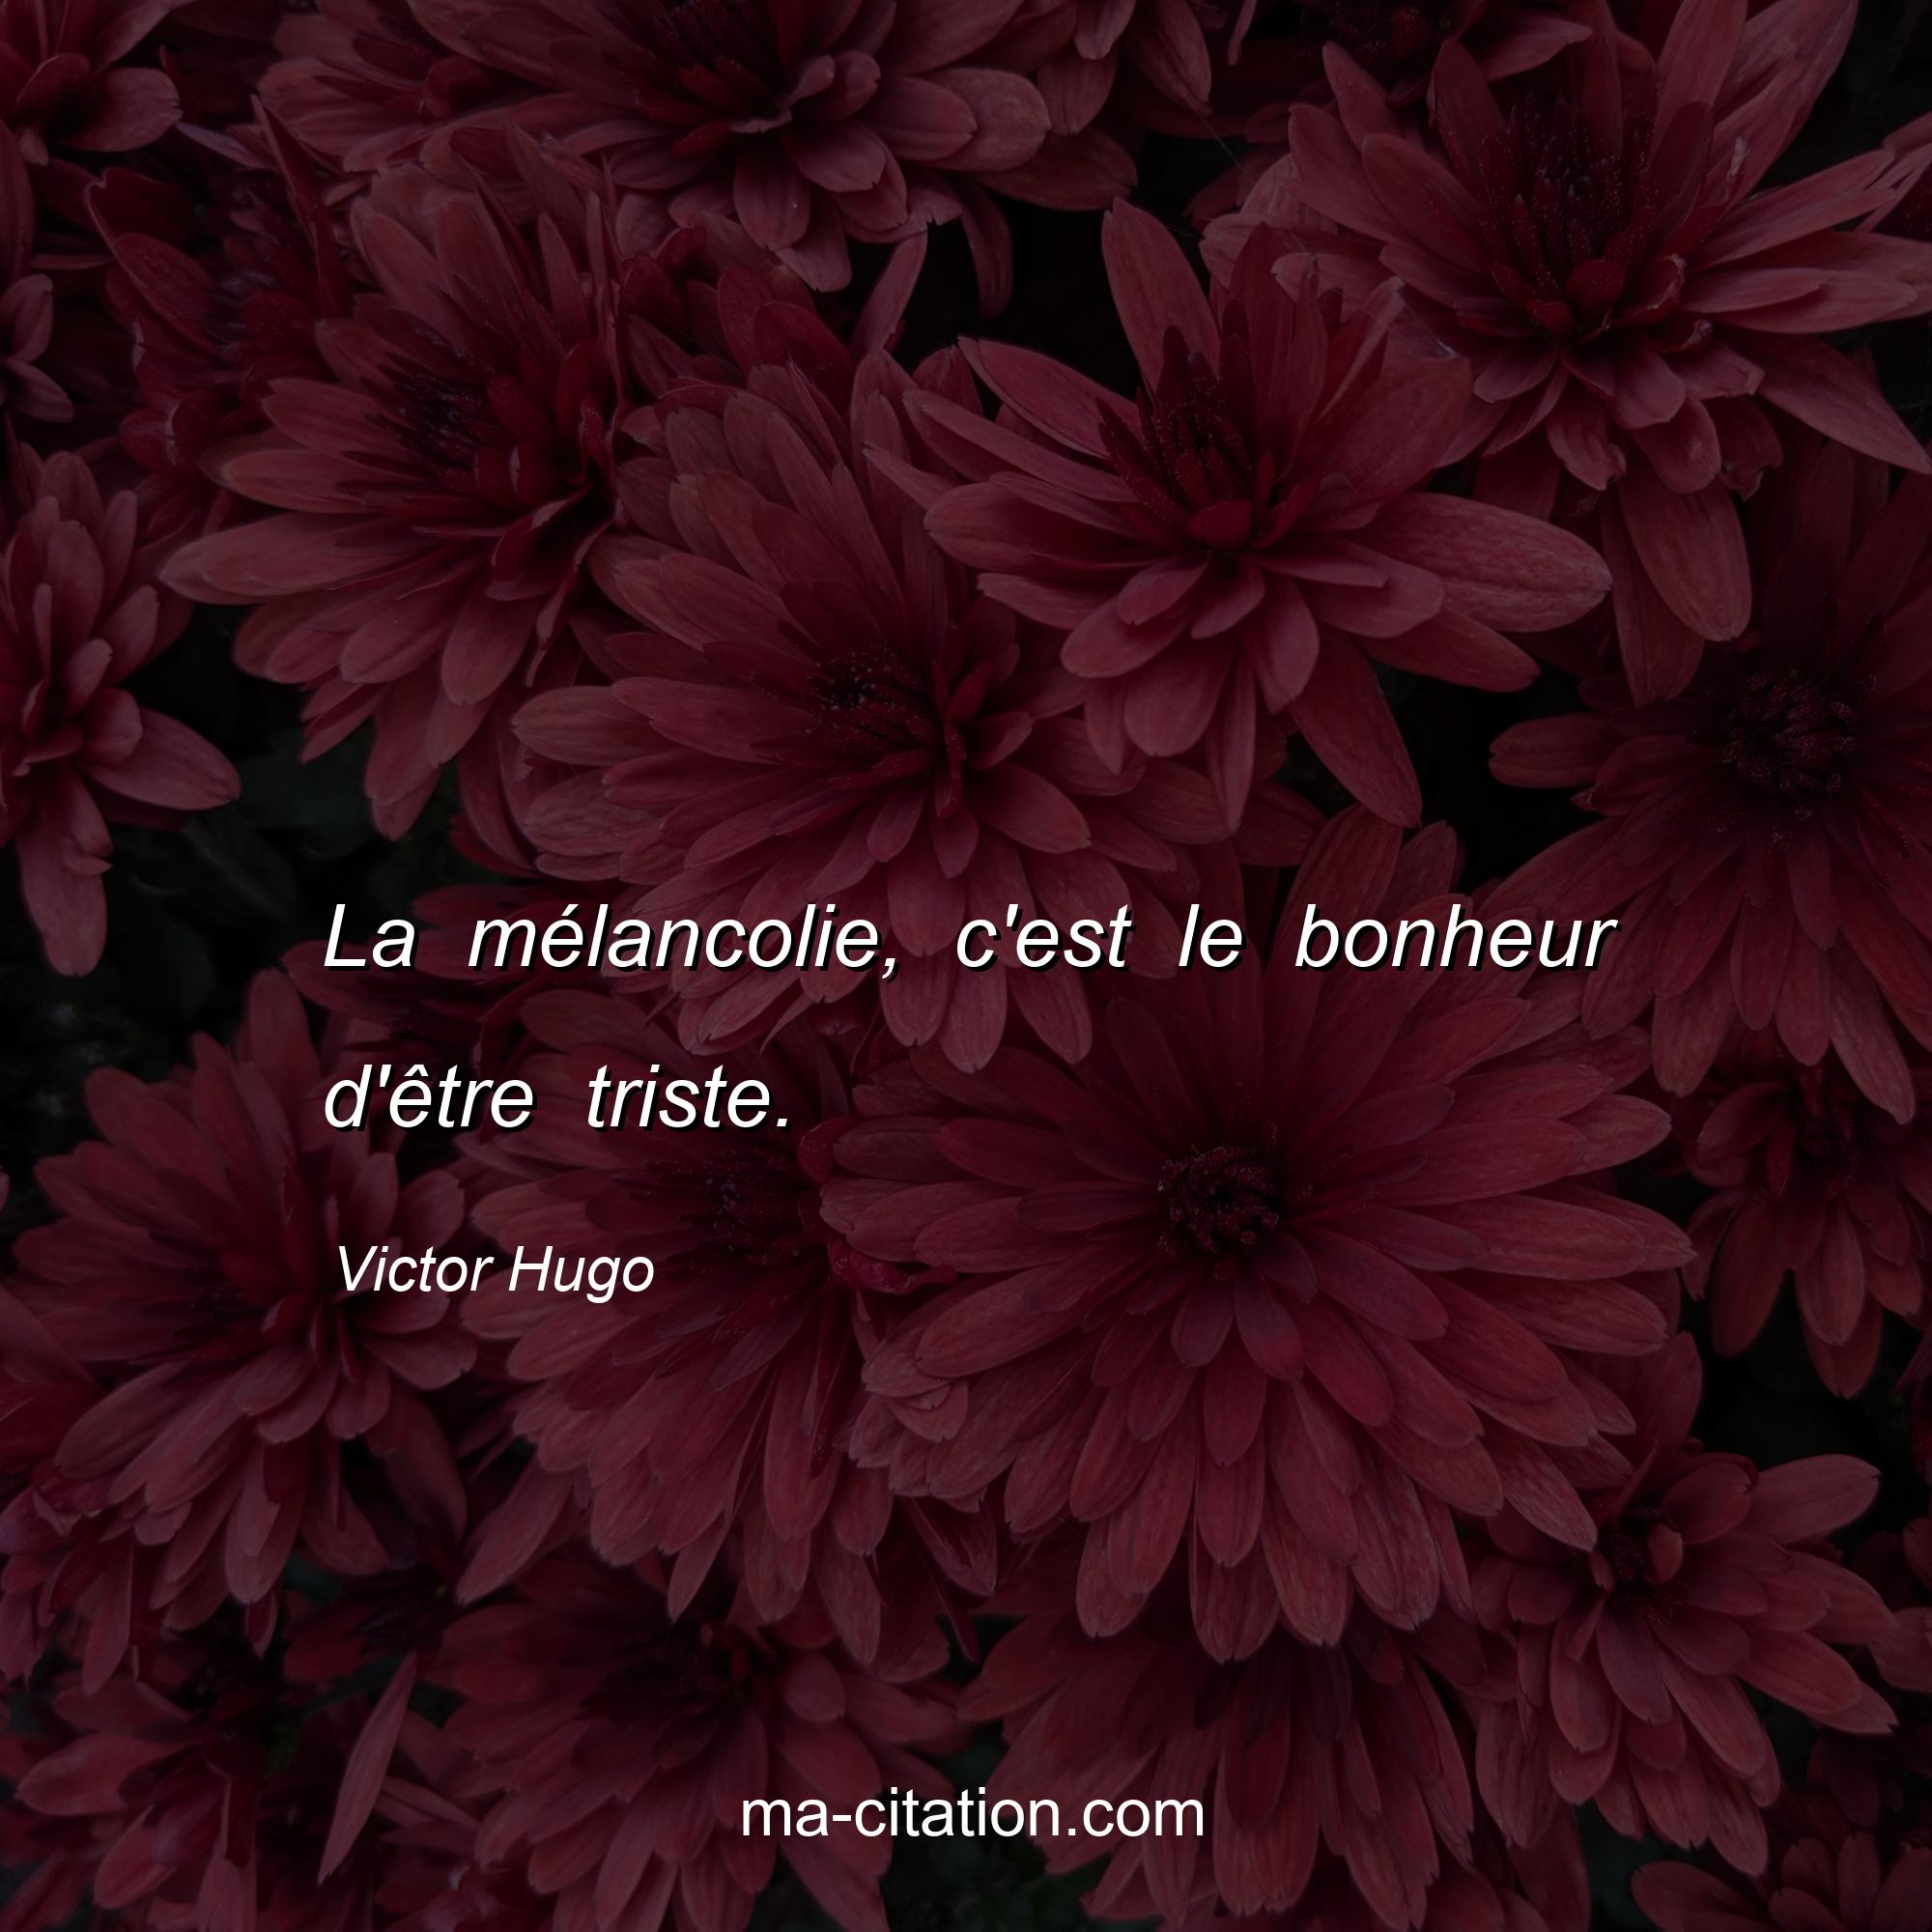 Victor Hugo : La mélancolie, c'est le bonheur d'être triste.